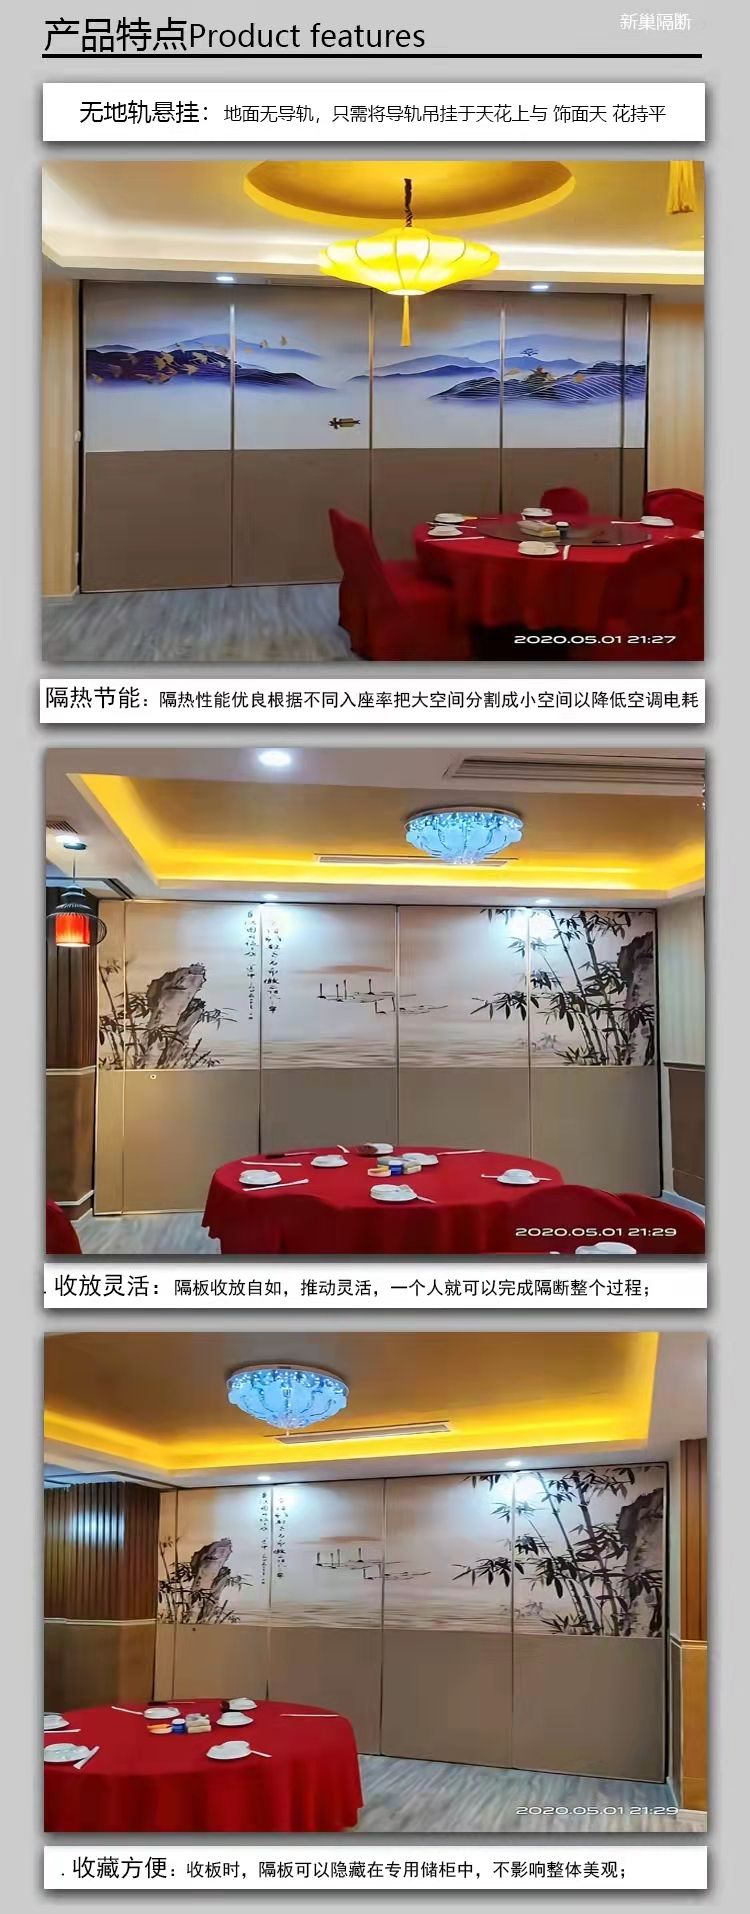 上海宴会厅_溢香厅国际宴会中心_温州溢香厅国际宴会